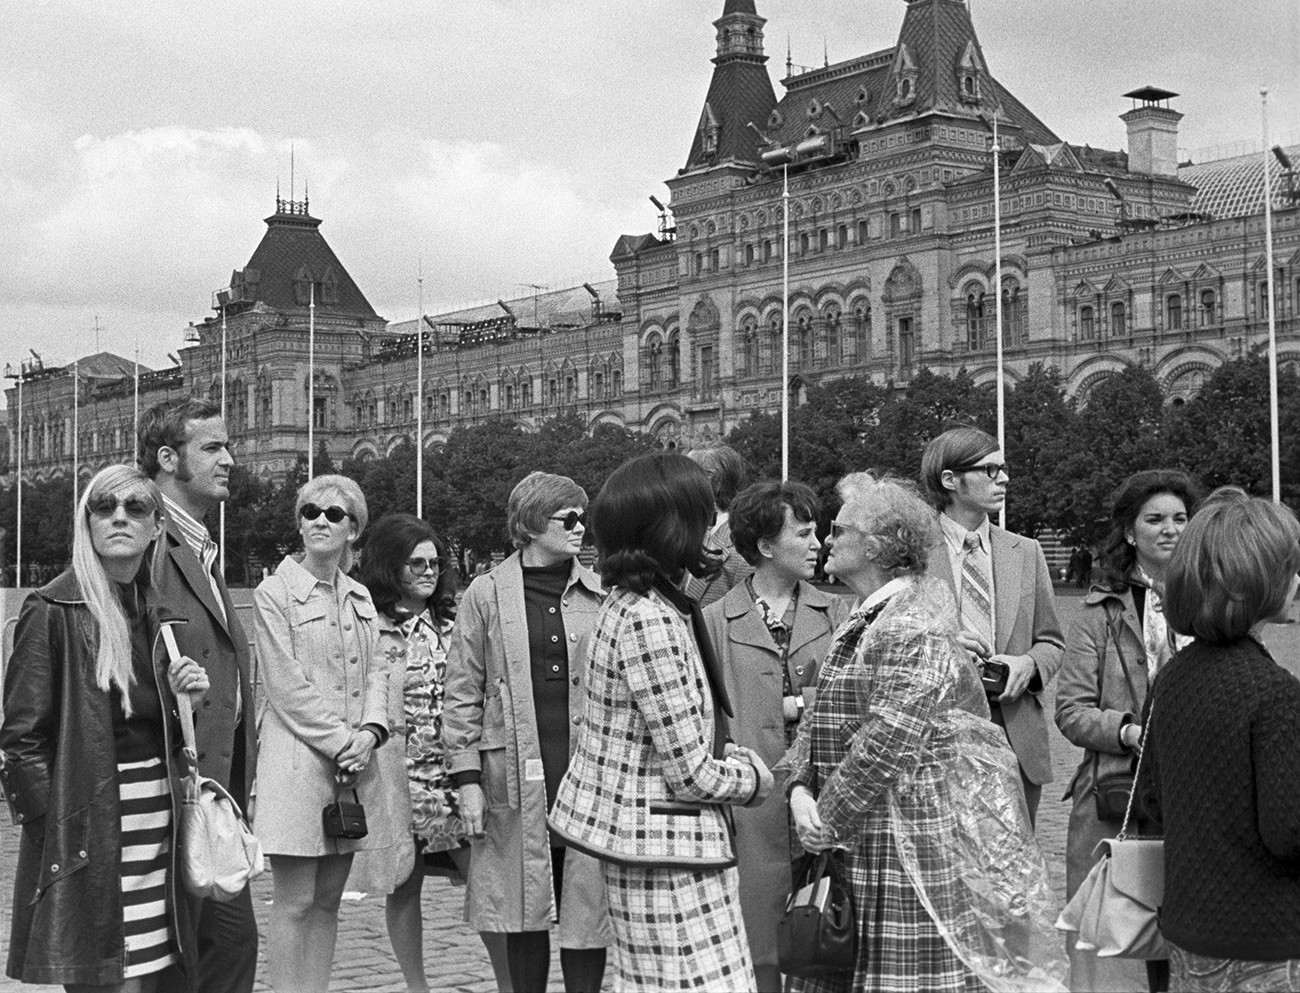 Touristes américains à Moscou, 1972

